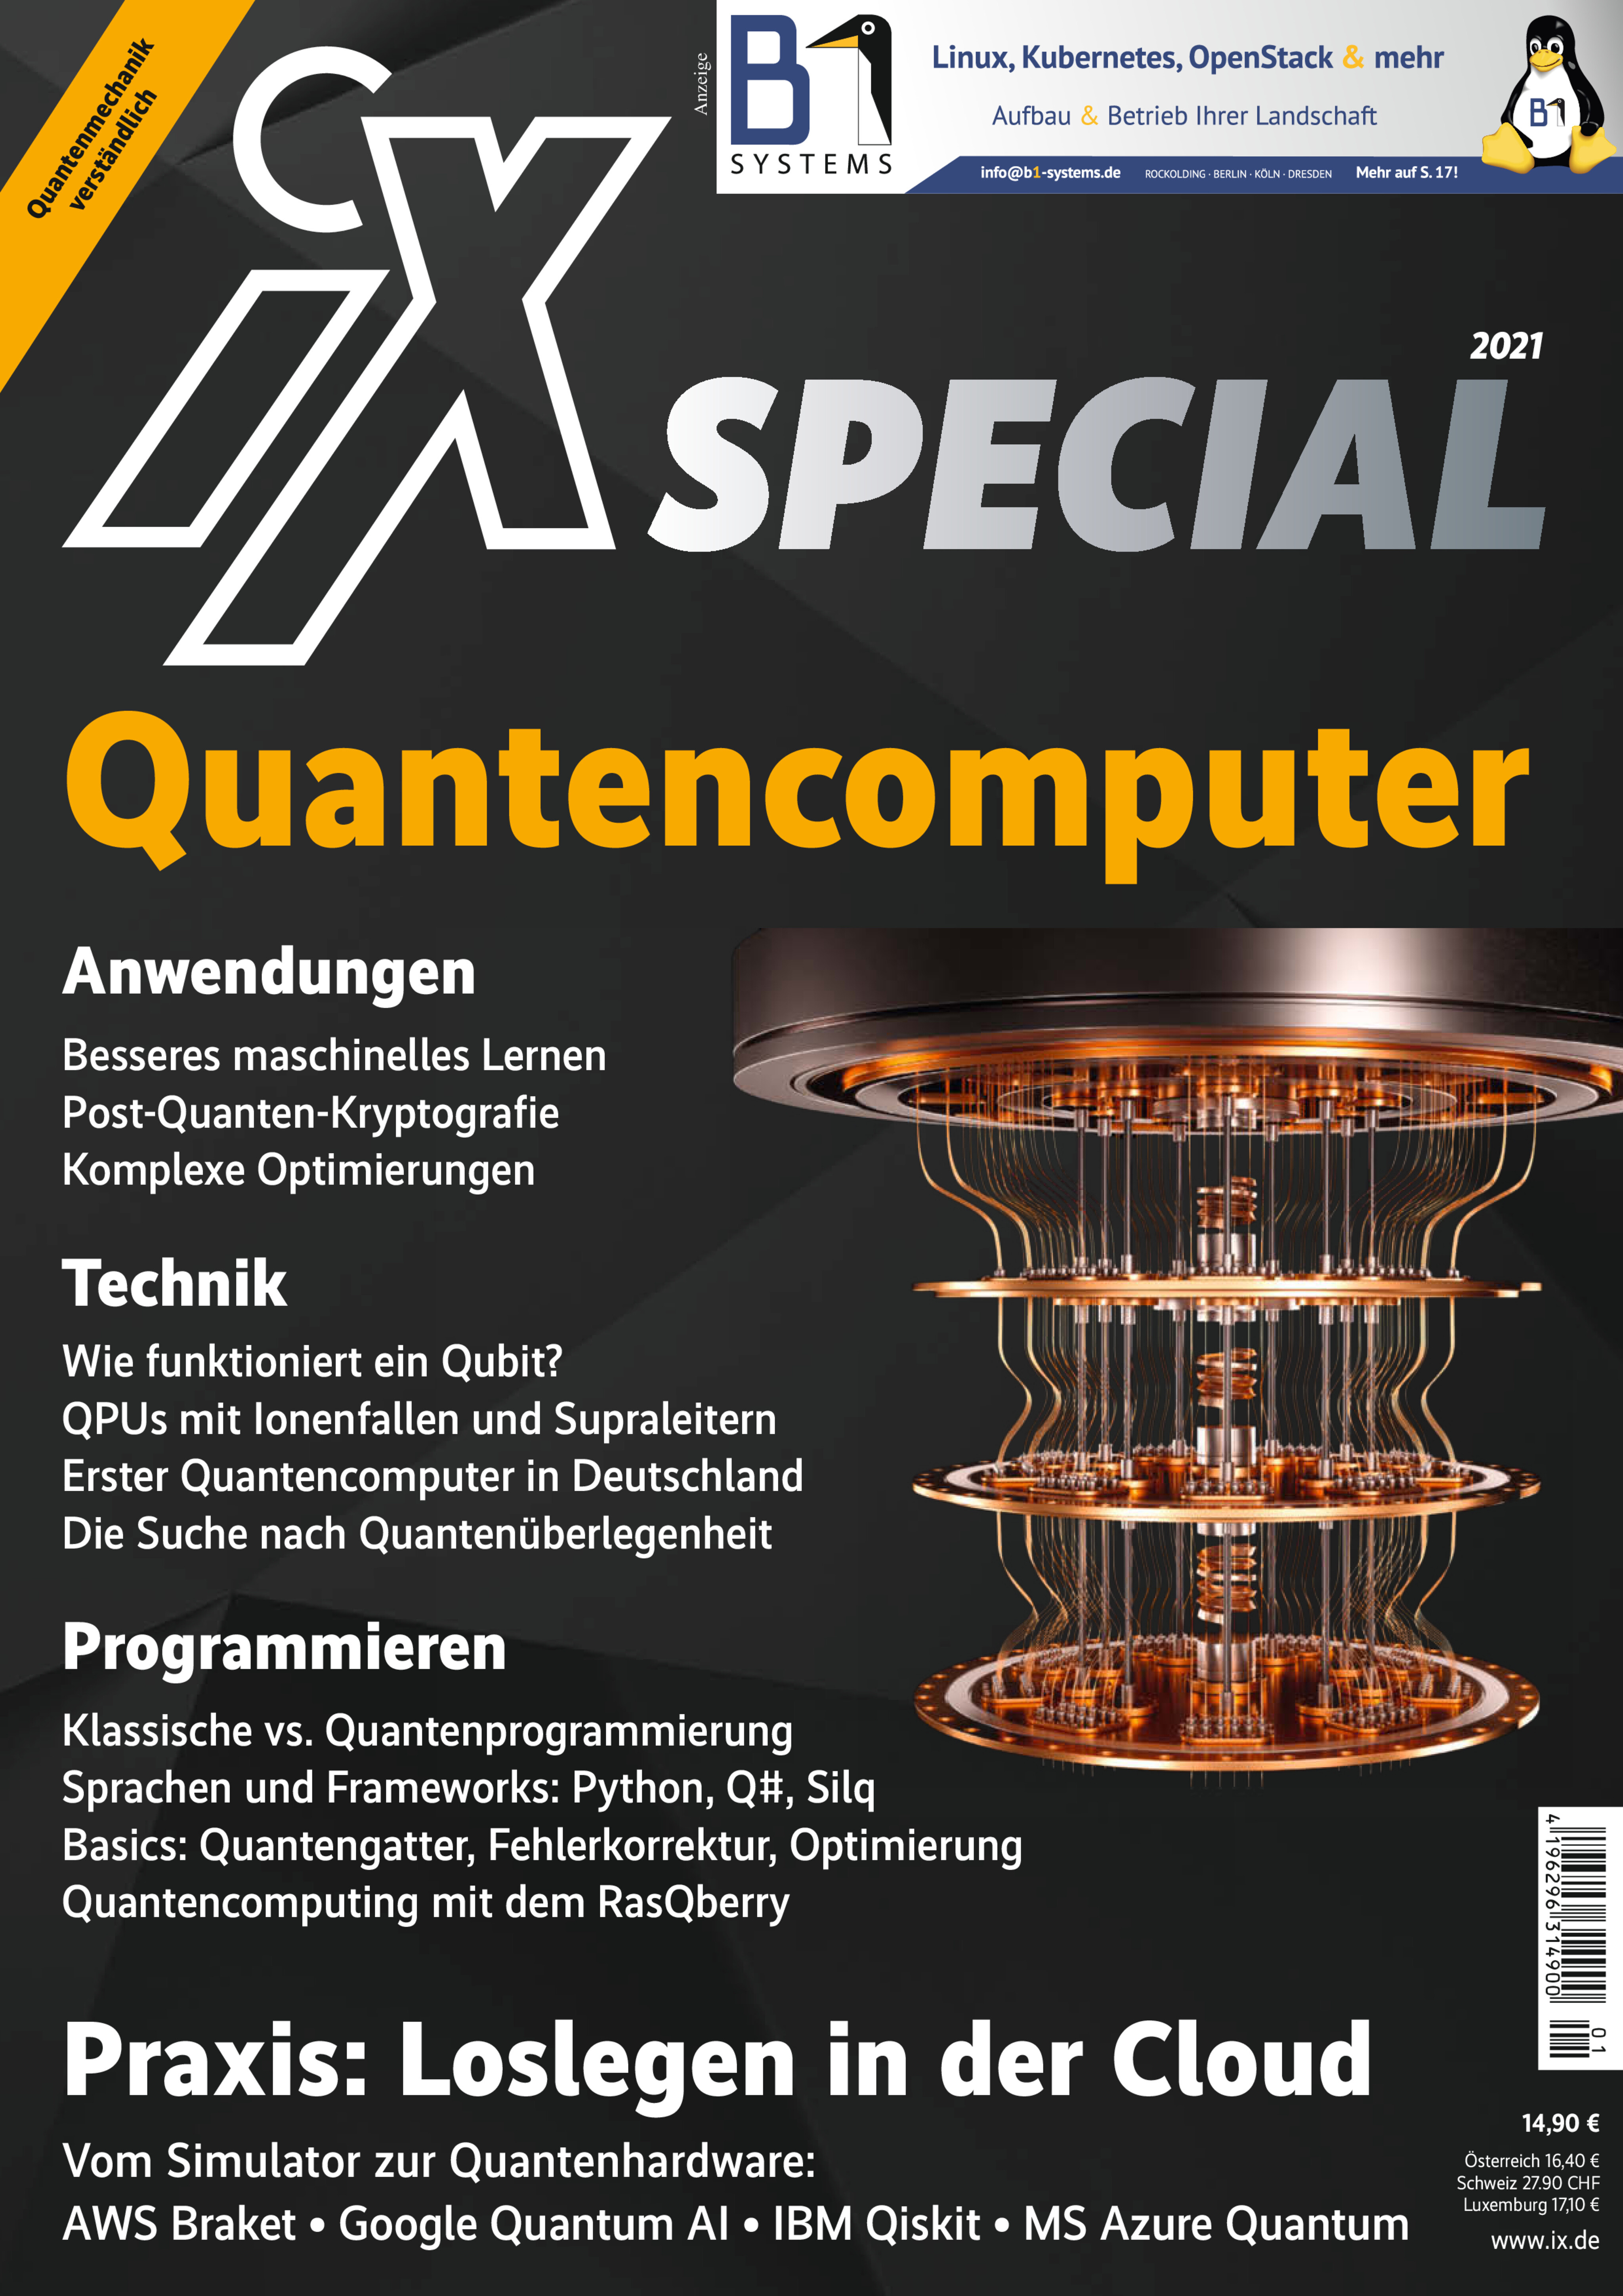 iX Special 2021 Quantencomputer 